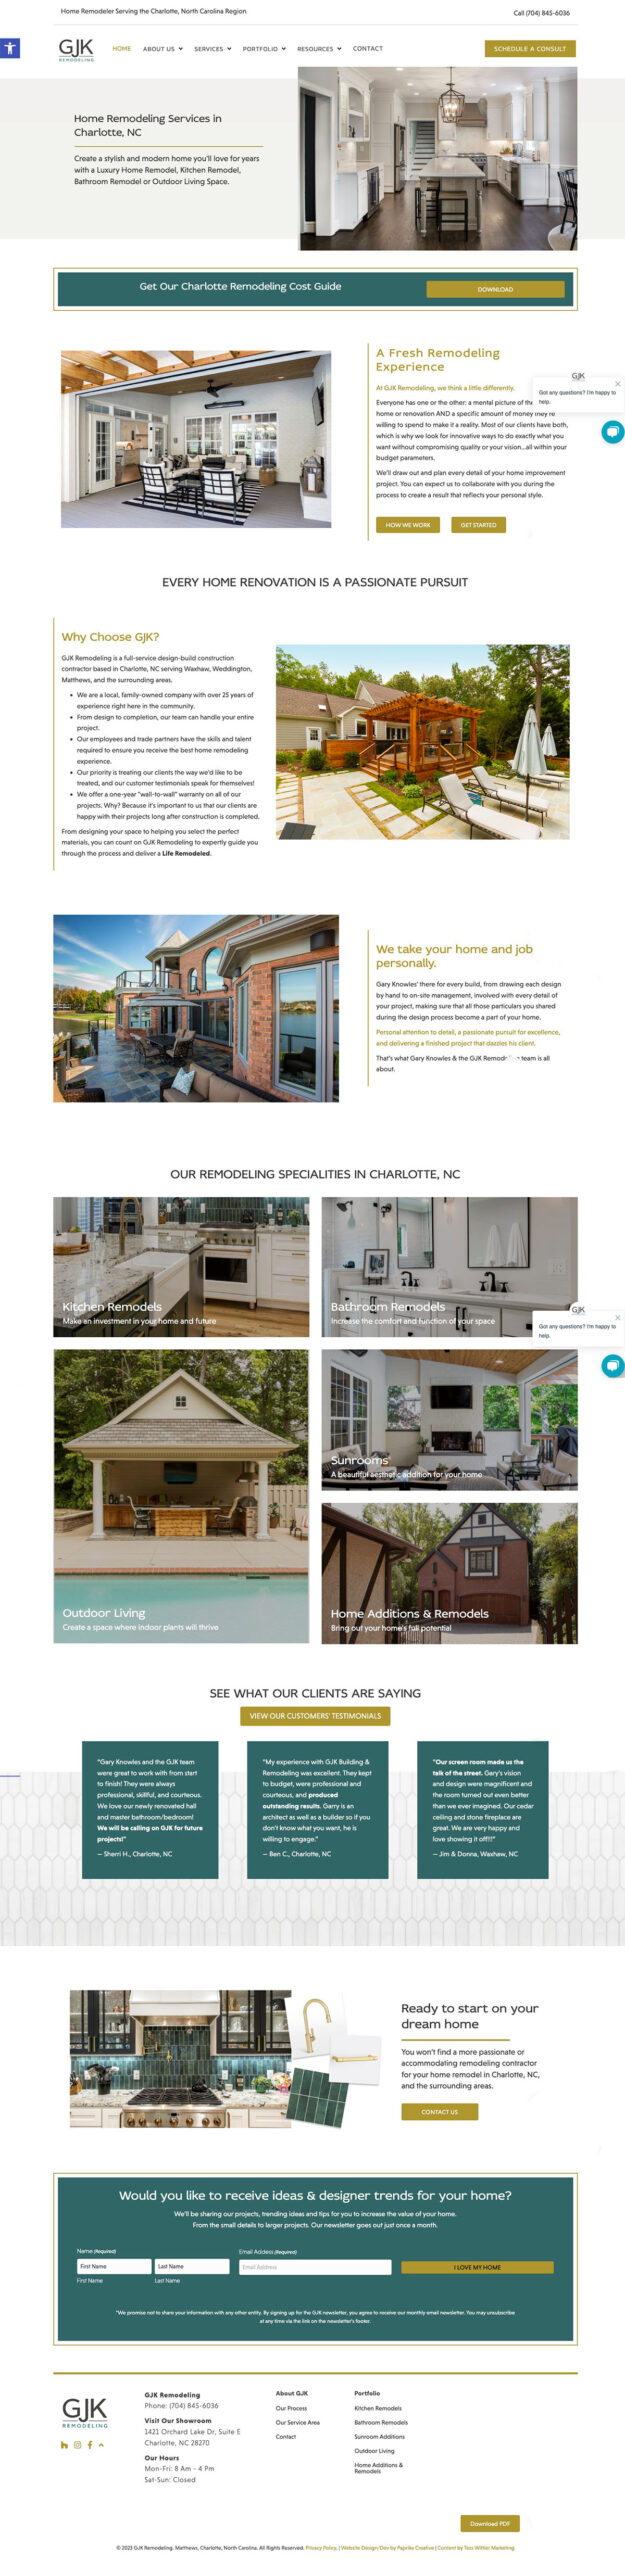 Home Remodeling Service Website Design